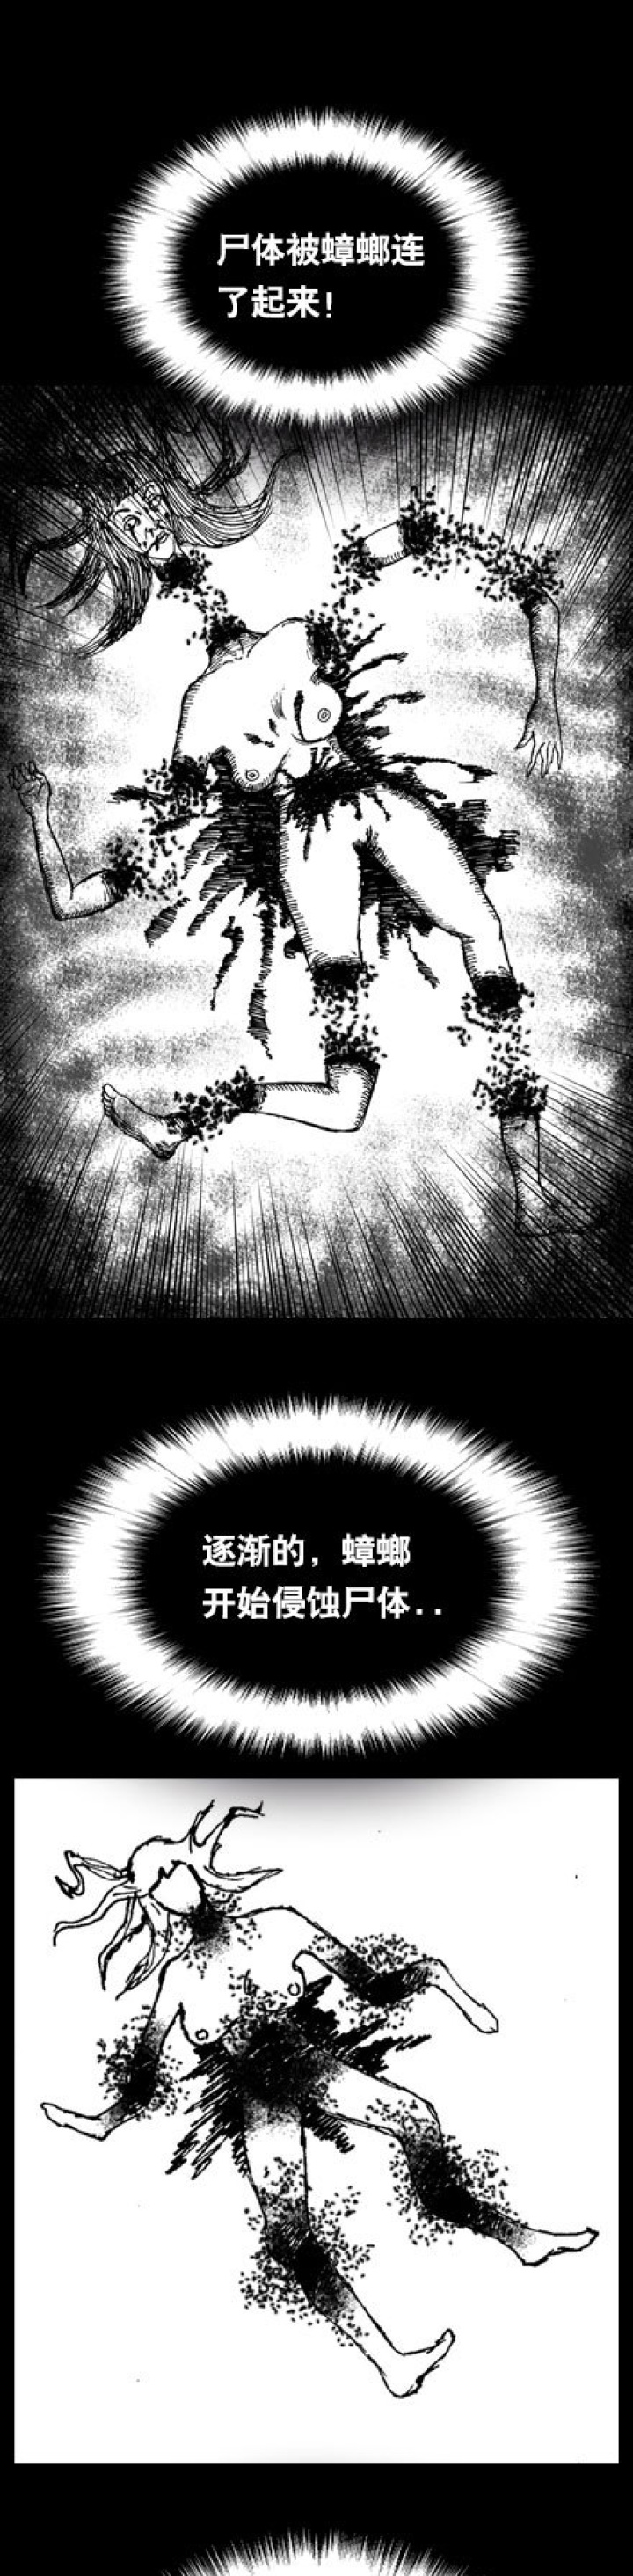 韩国漫画《喰影》-黑白漫话